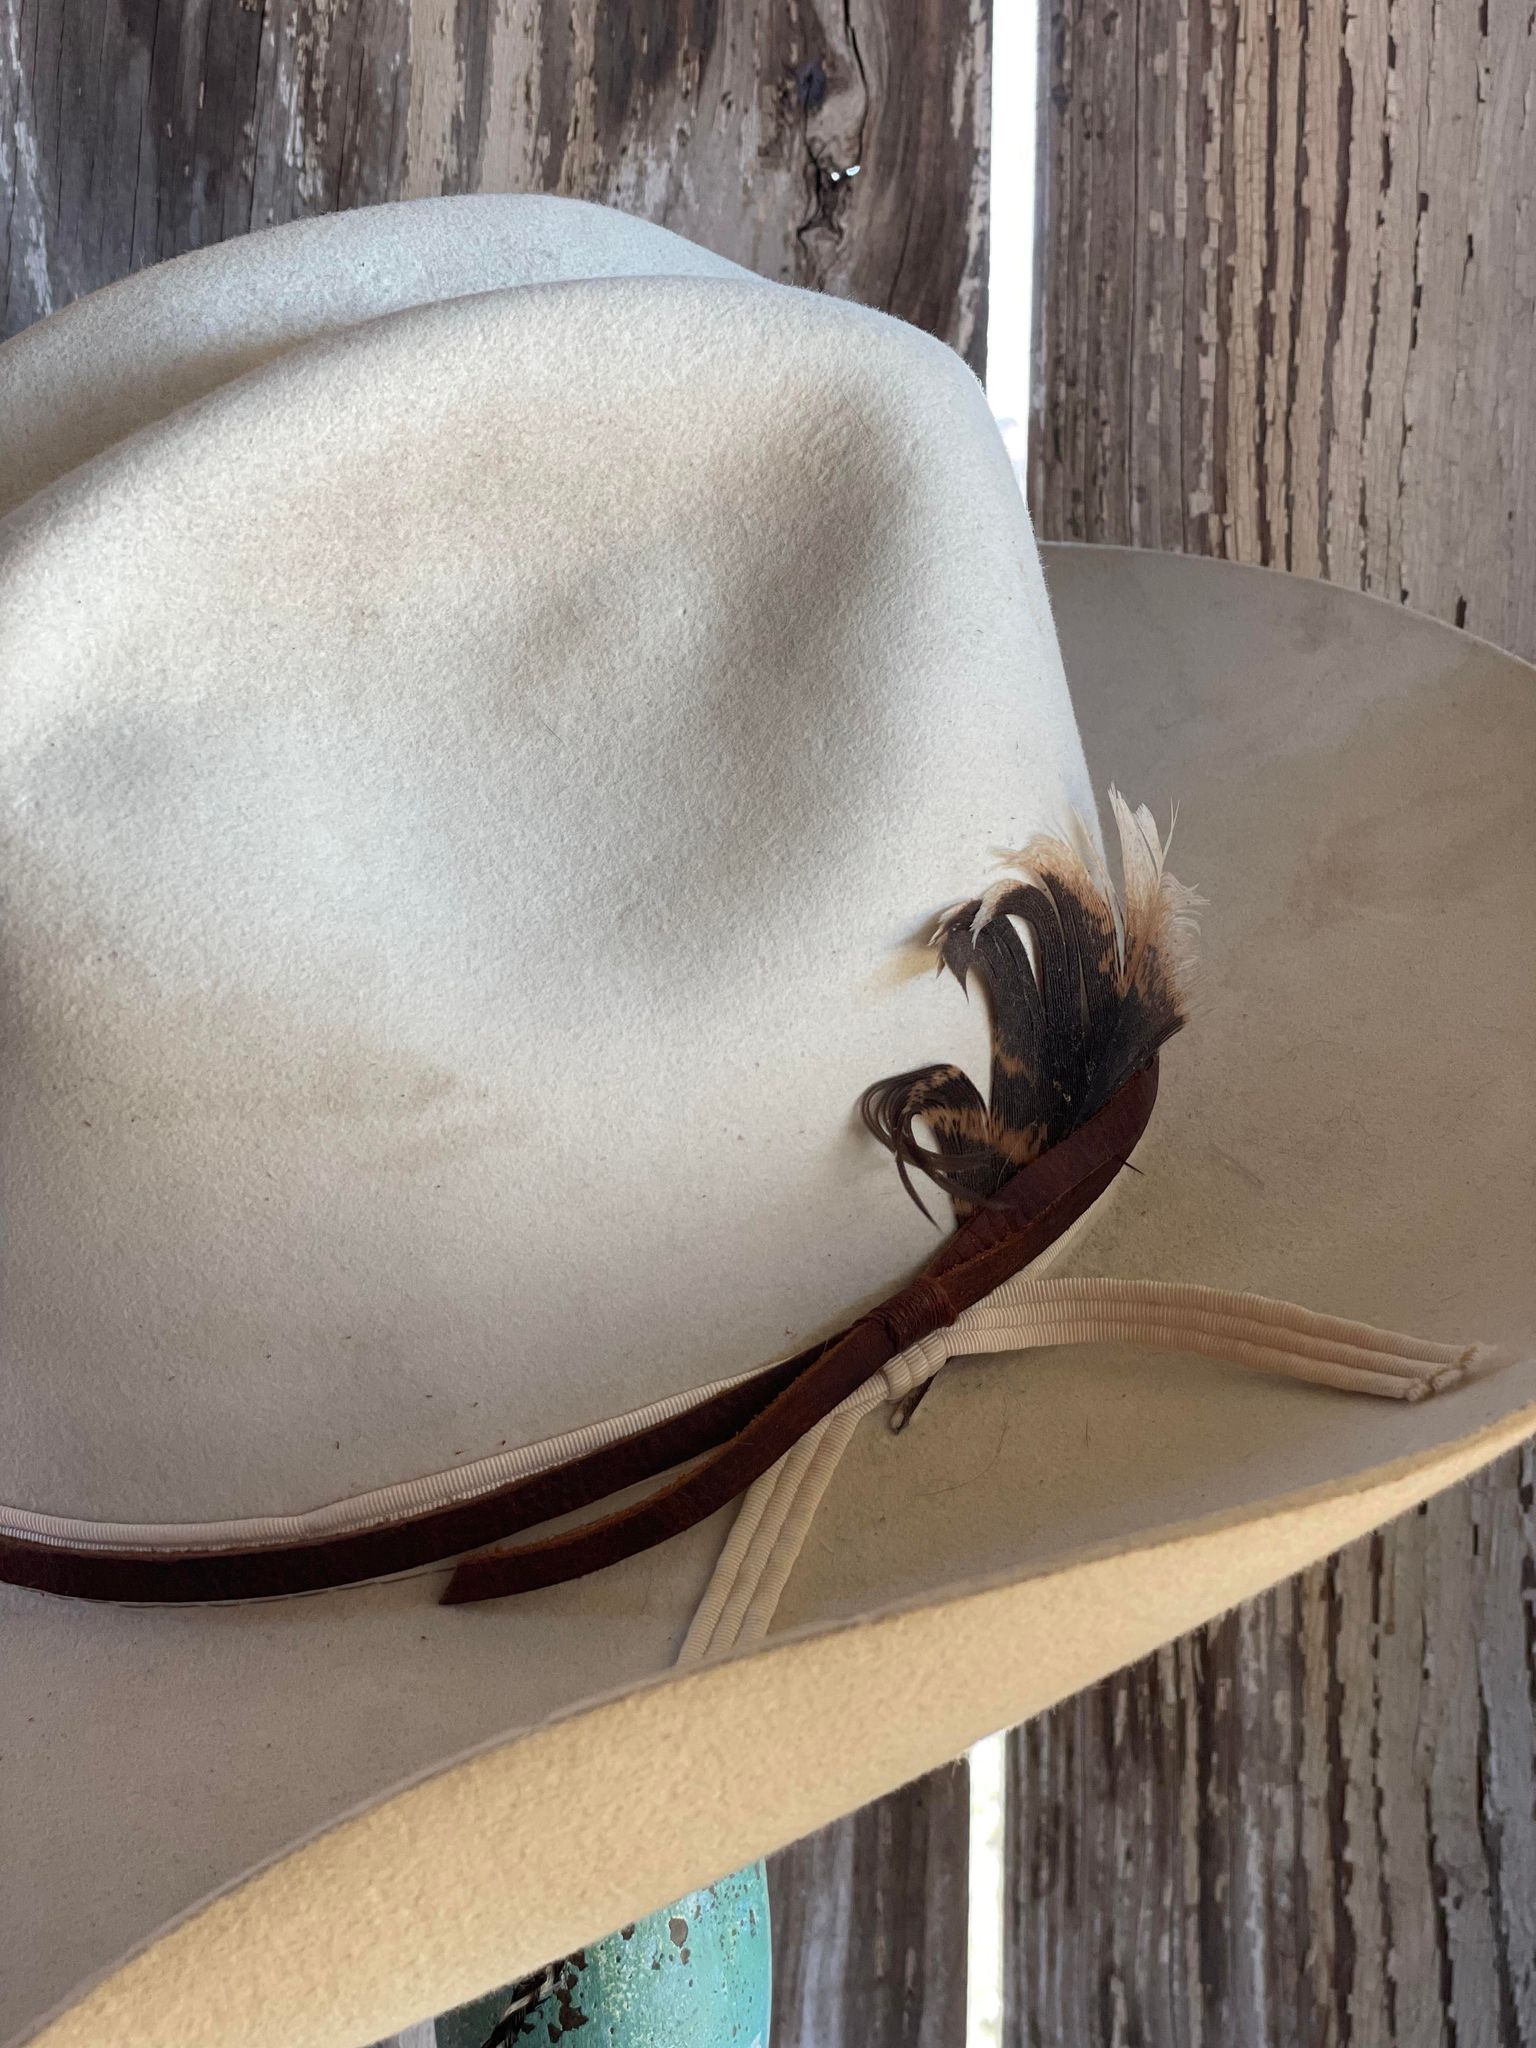 Vintage Felt Cowboy Hat